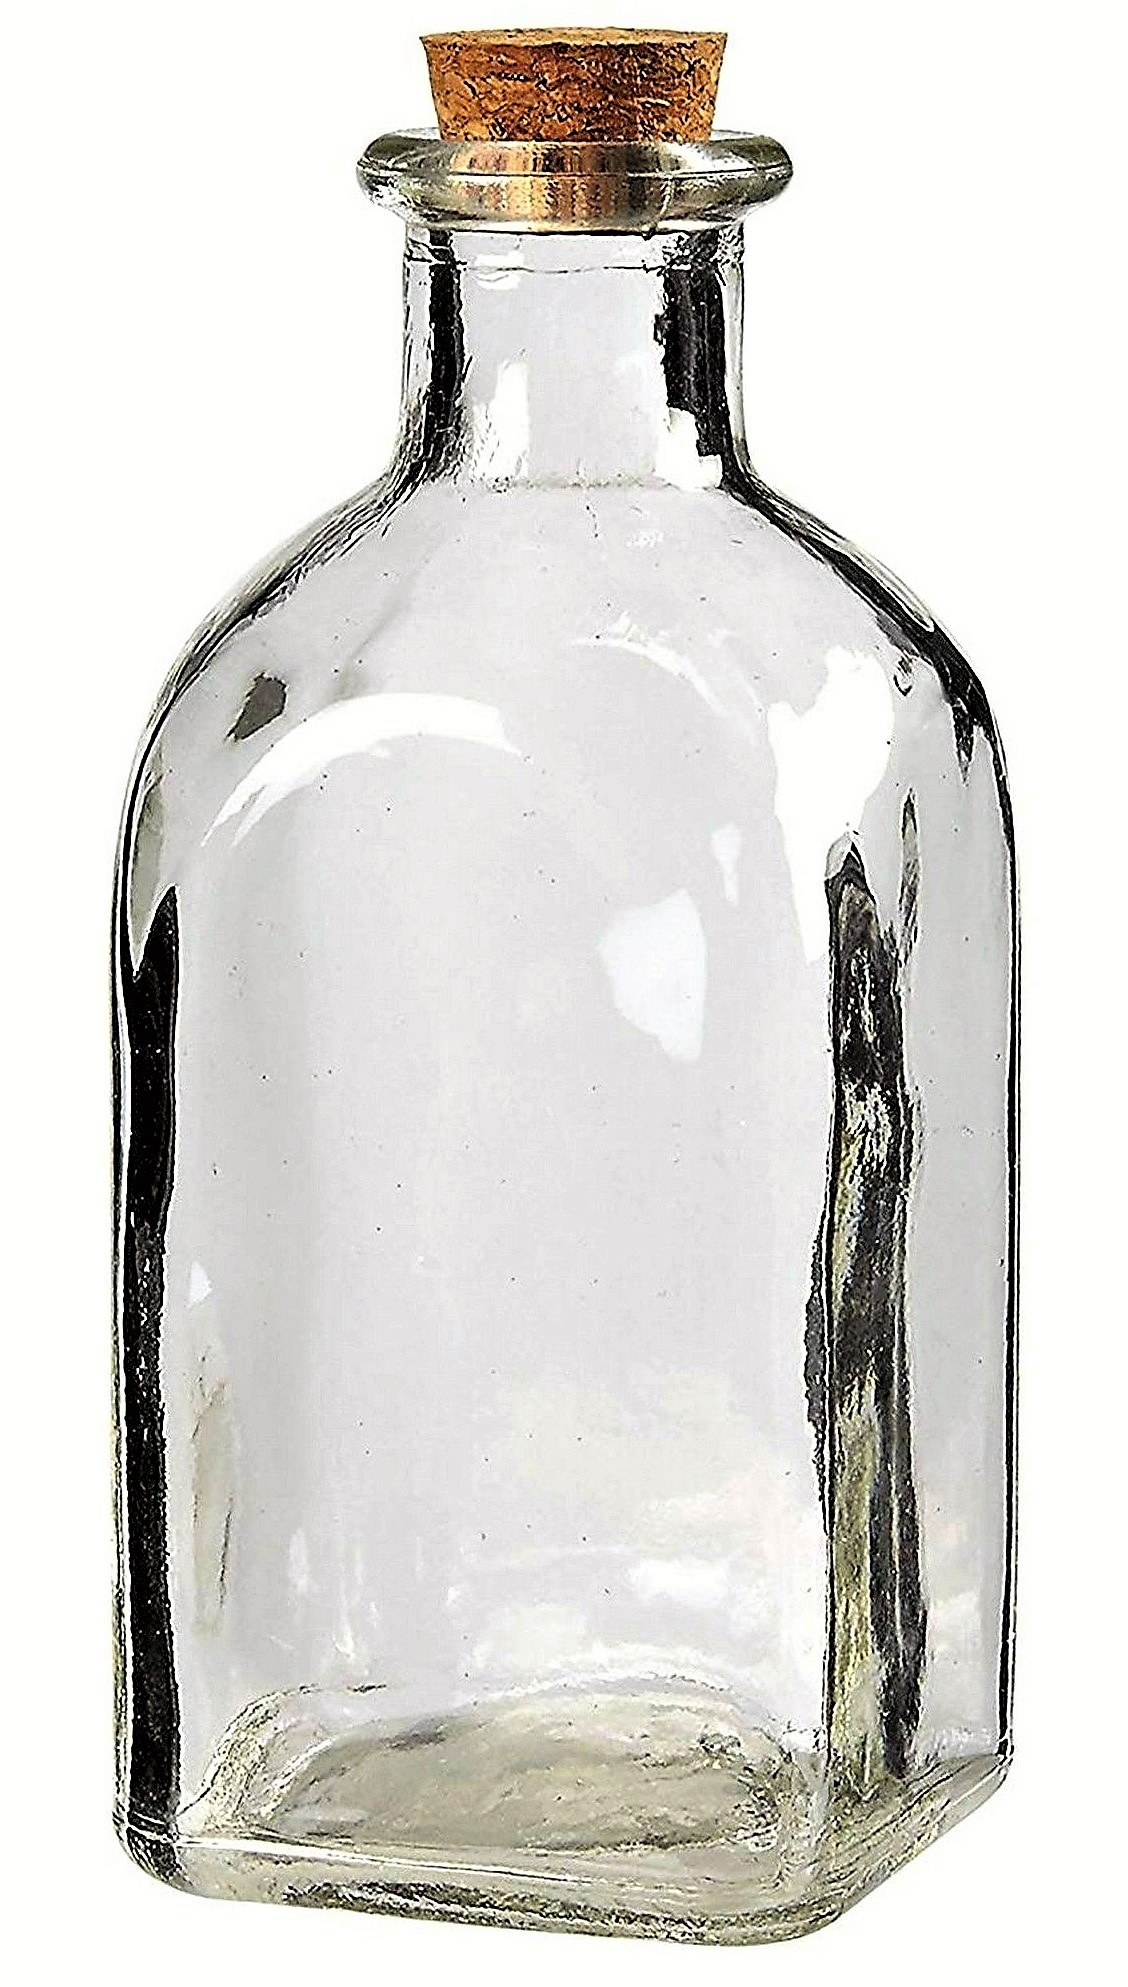 Botellas De Vidrio 1 Litro Con Corcho